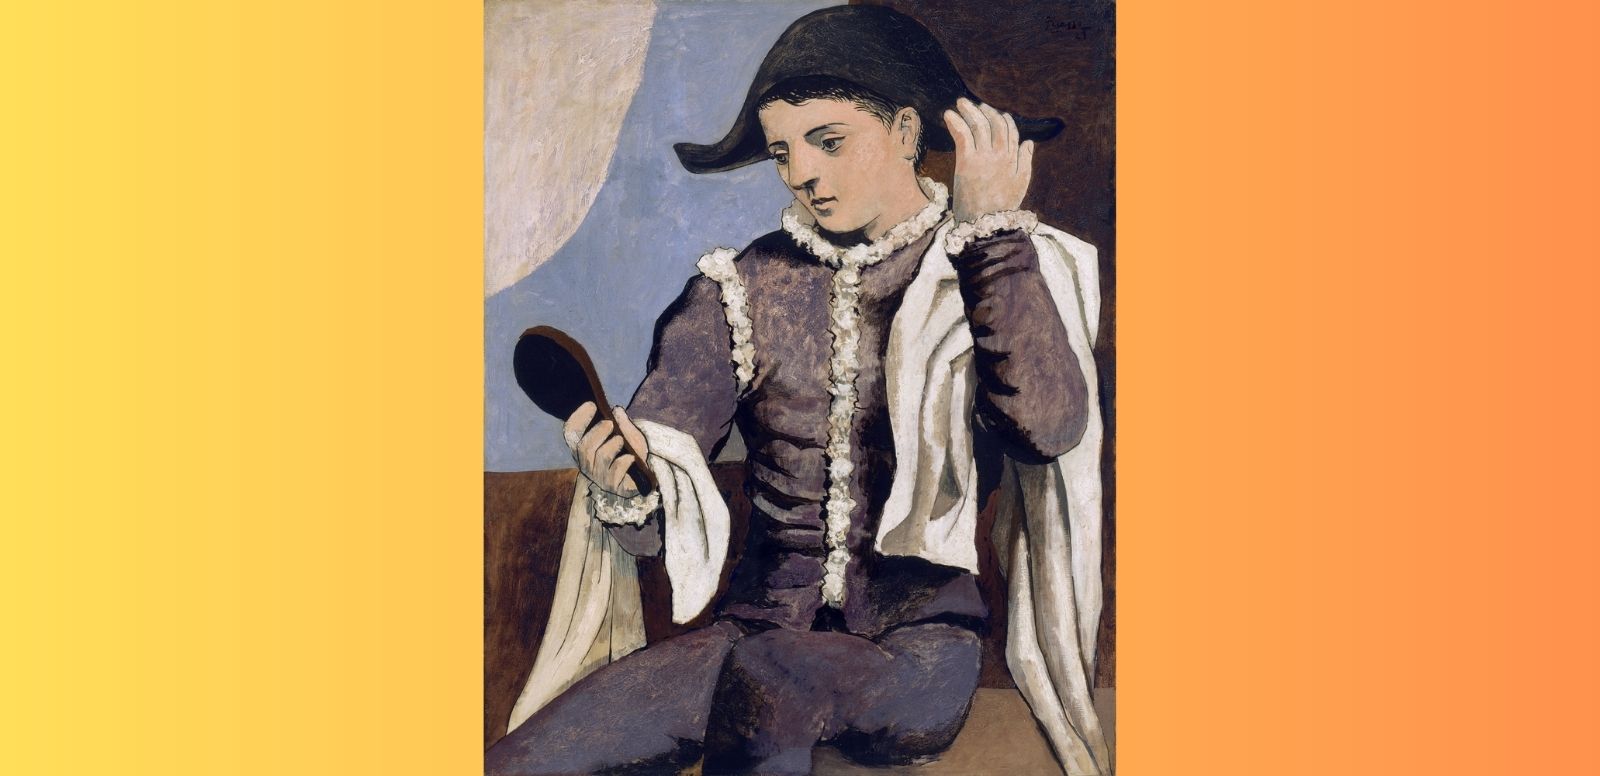 Pablo Picasso "Arlequín con espejo",1923